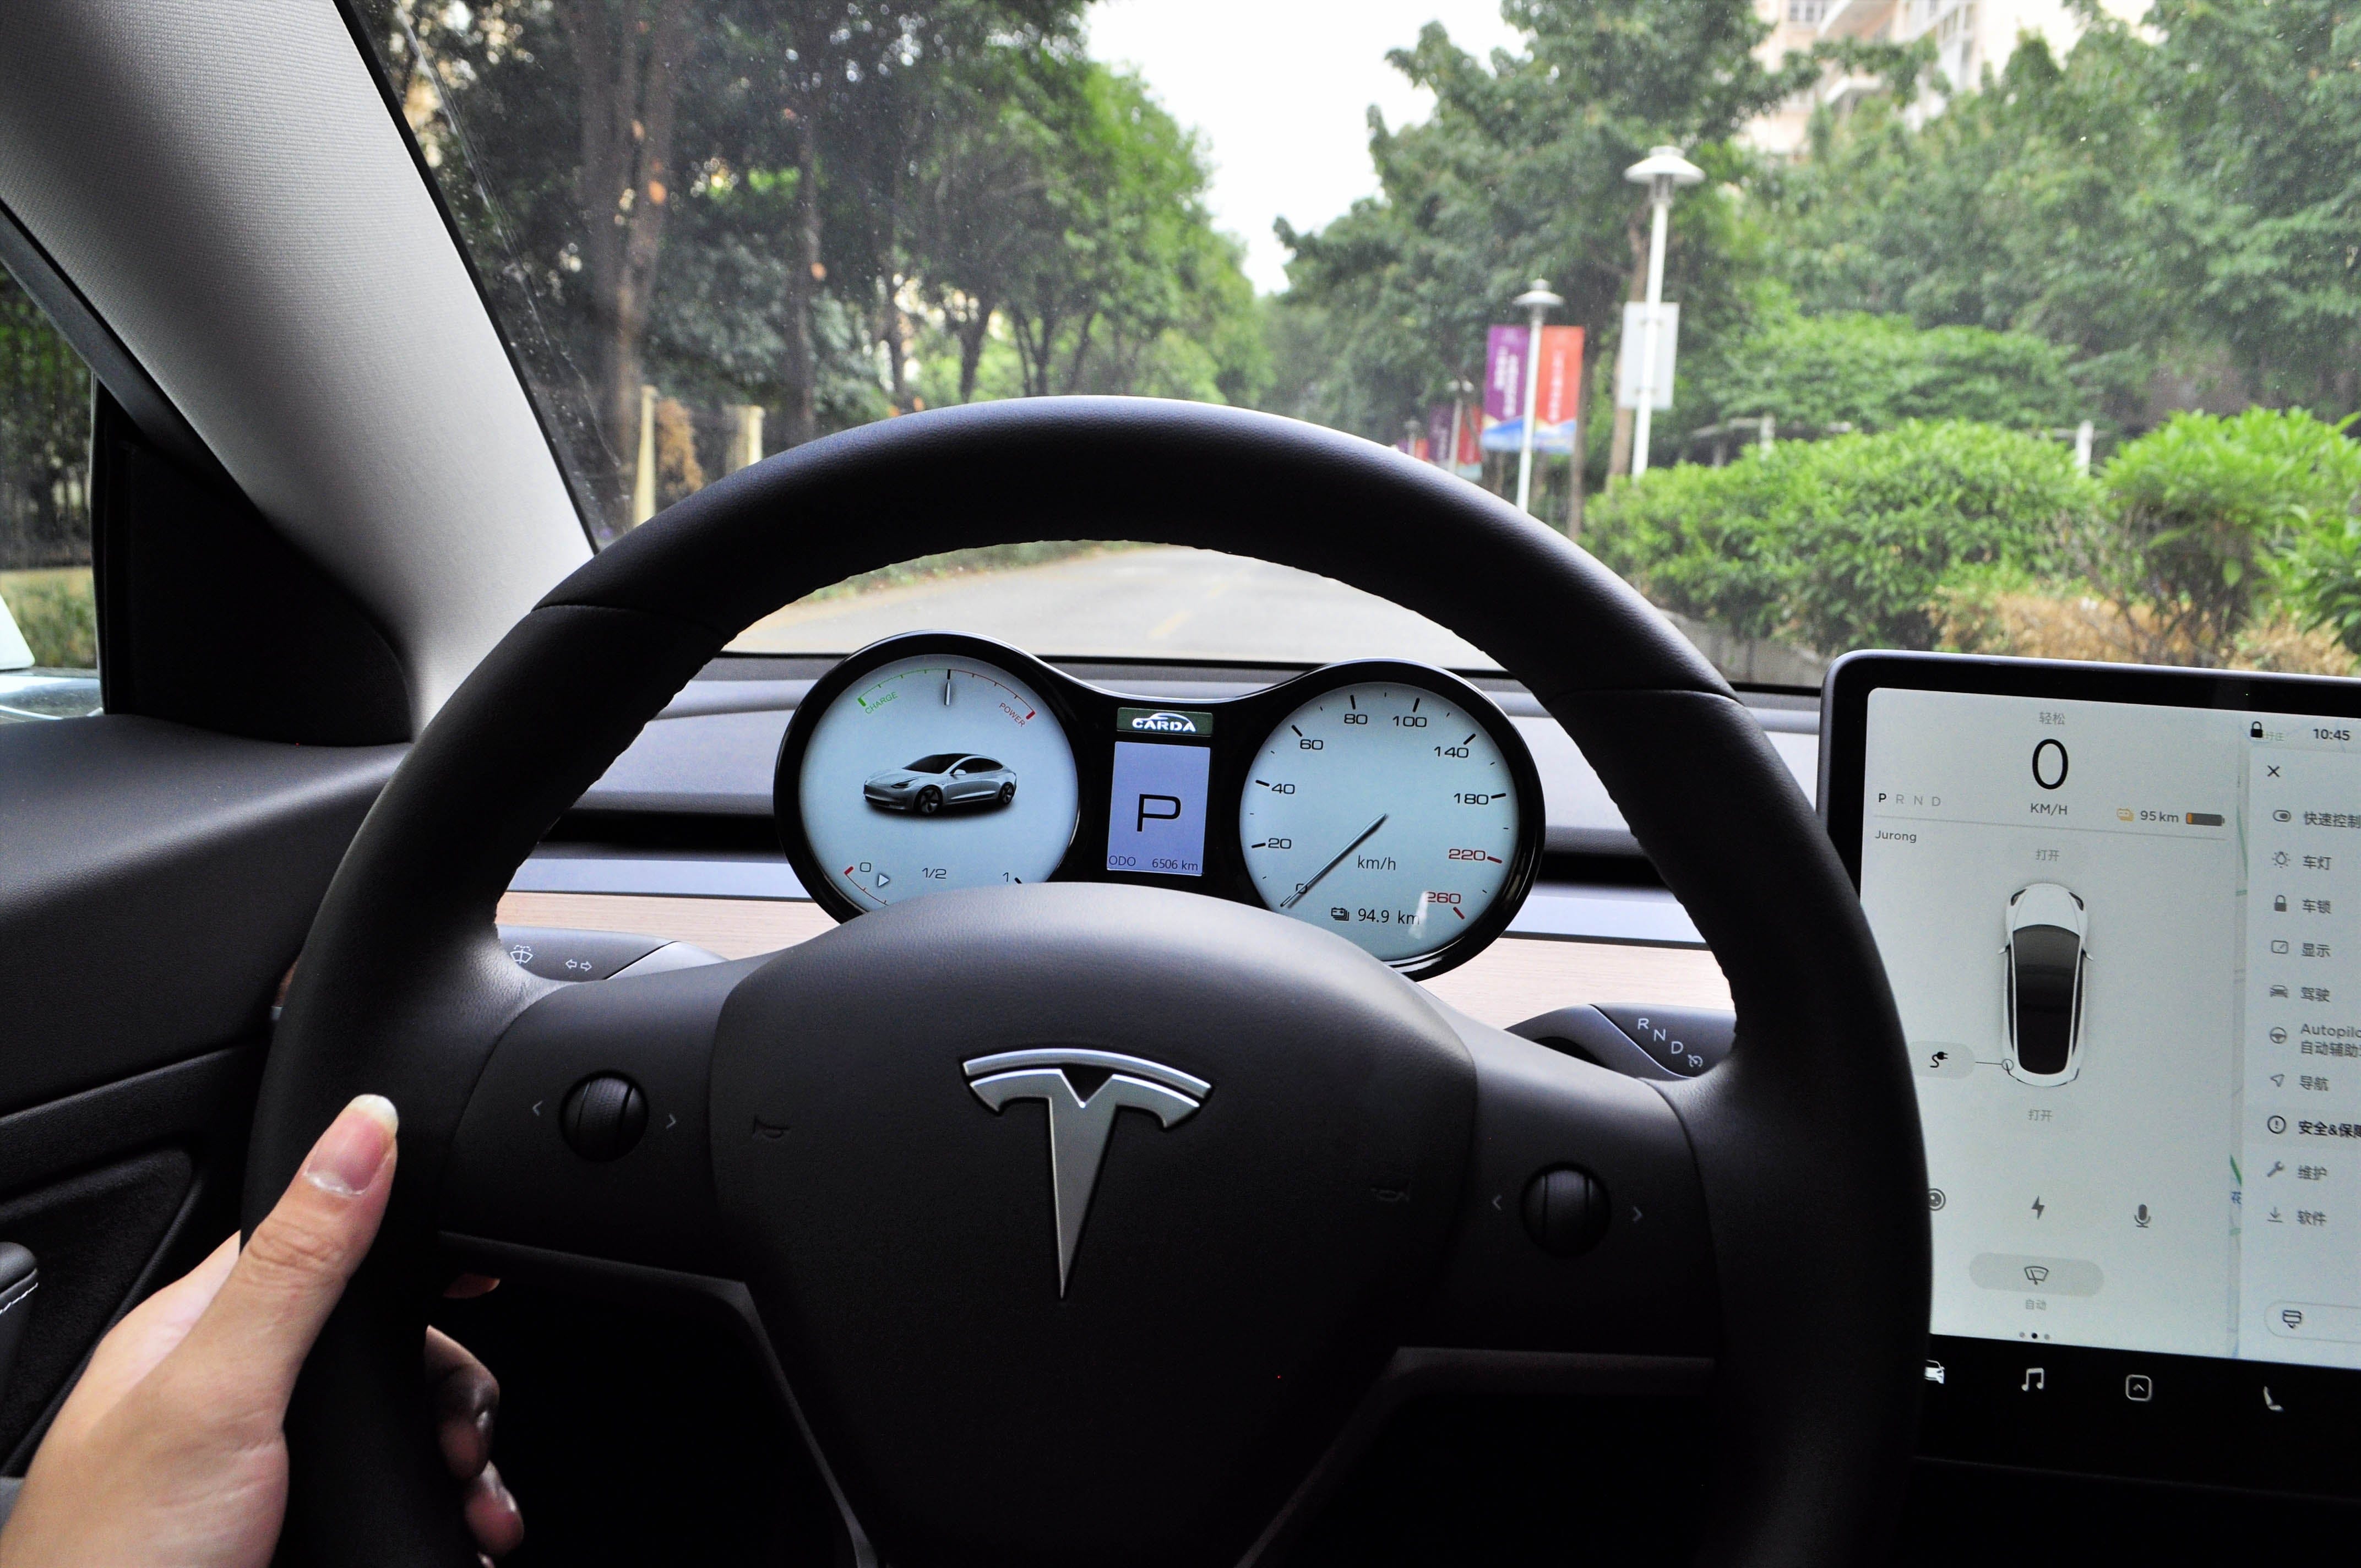 Dashboard Instrument Cluster Display For Tesla Model Y 2020-2023